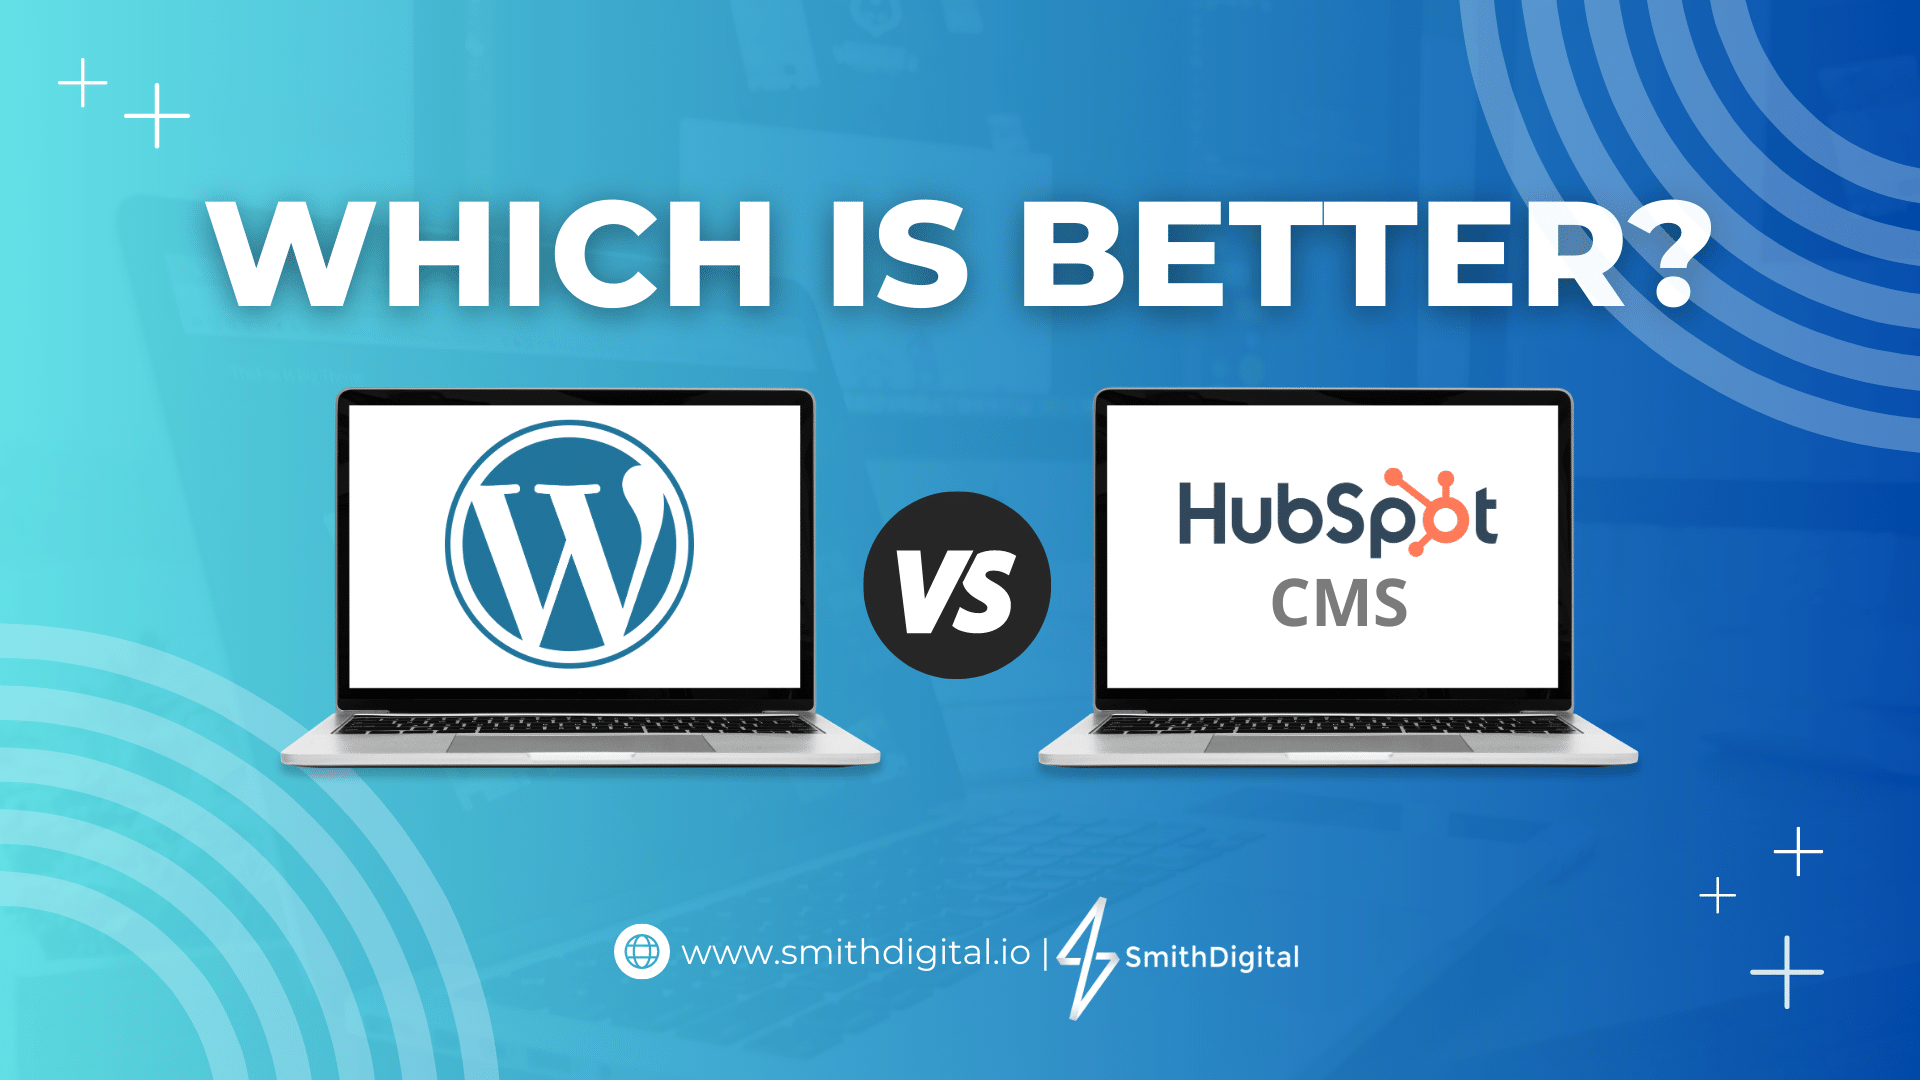 HubSpot CMS vs Wordpress